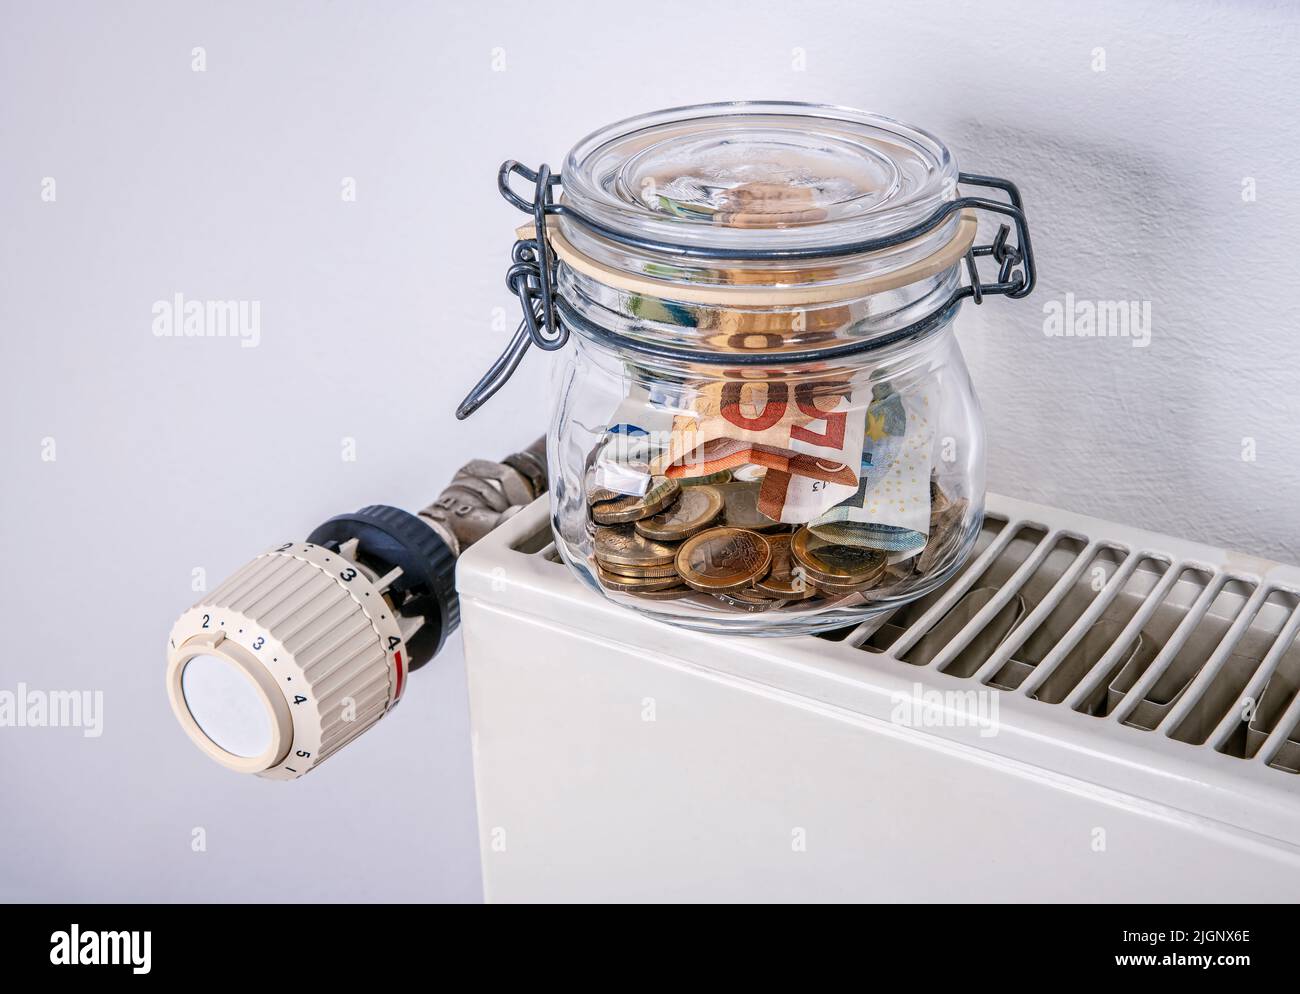 Risparmio per il riscaldamento: Radiatore e termostato con salvavita e denaro Foto Stock